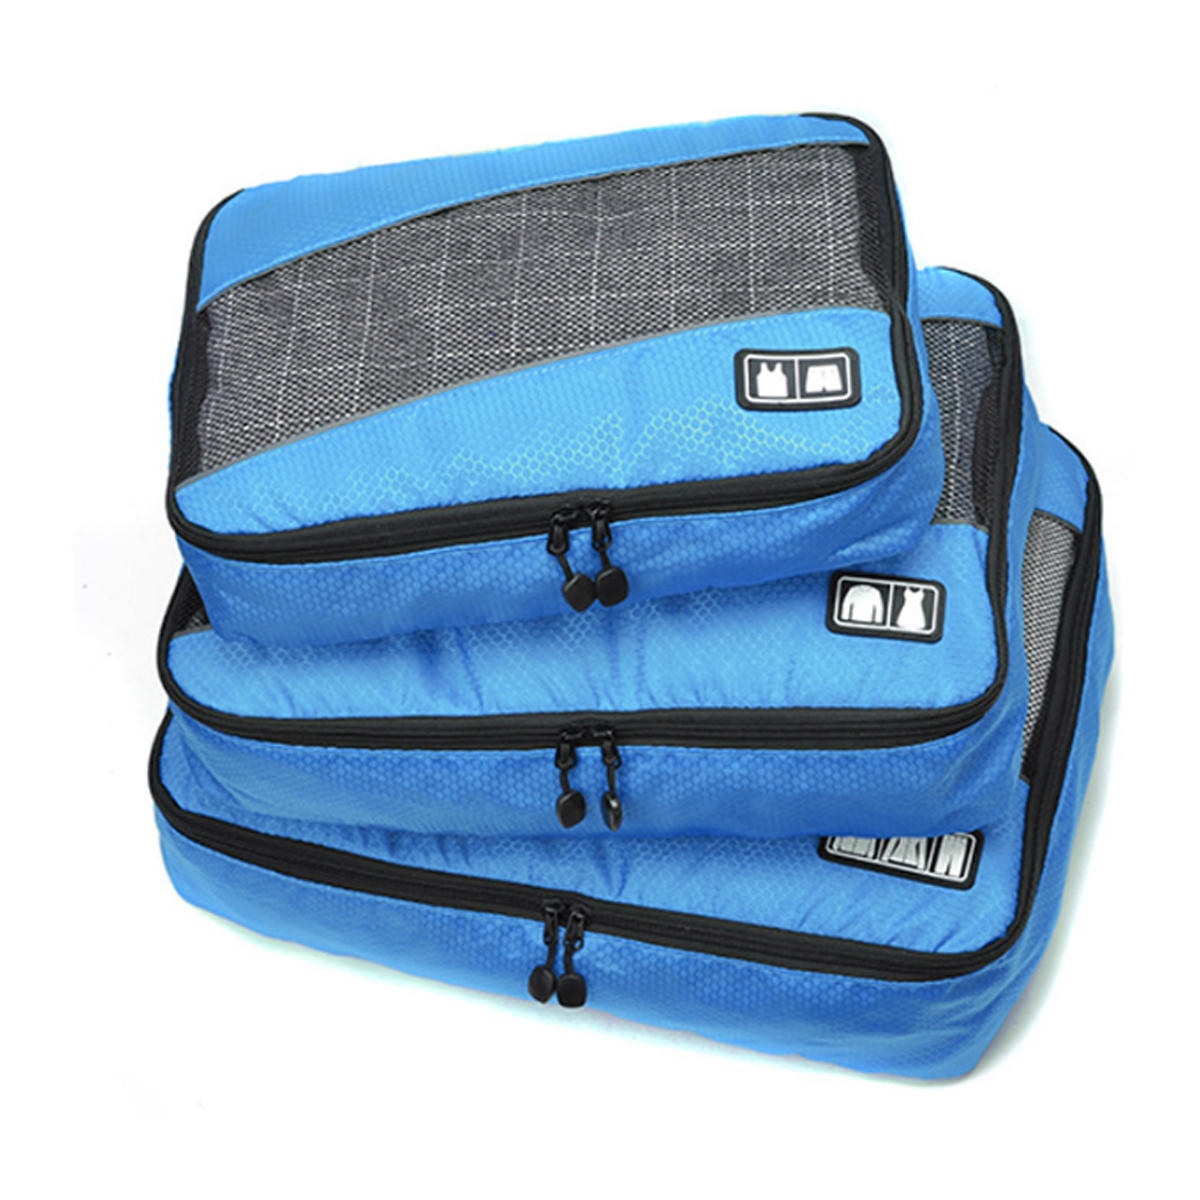 مجموعة من 3 حقائب تخزين مقاومة للماء لتخزين الملابس الداخلية والملابس ومنتجات العناية الشخصية أثناء السفر